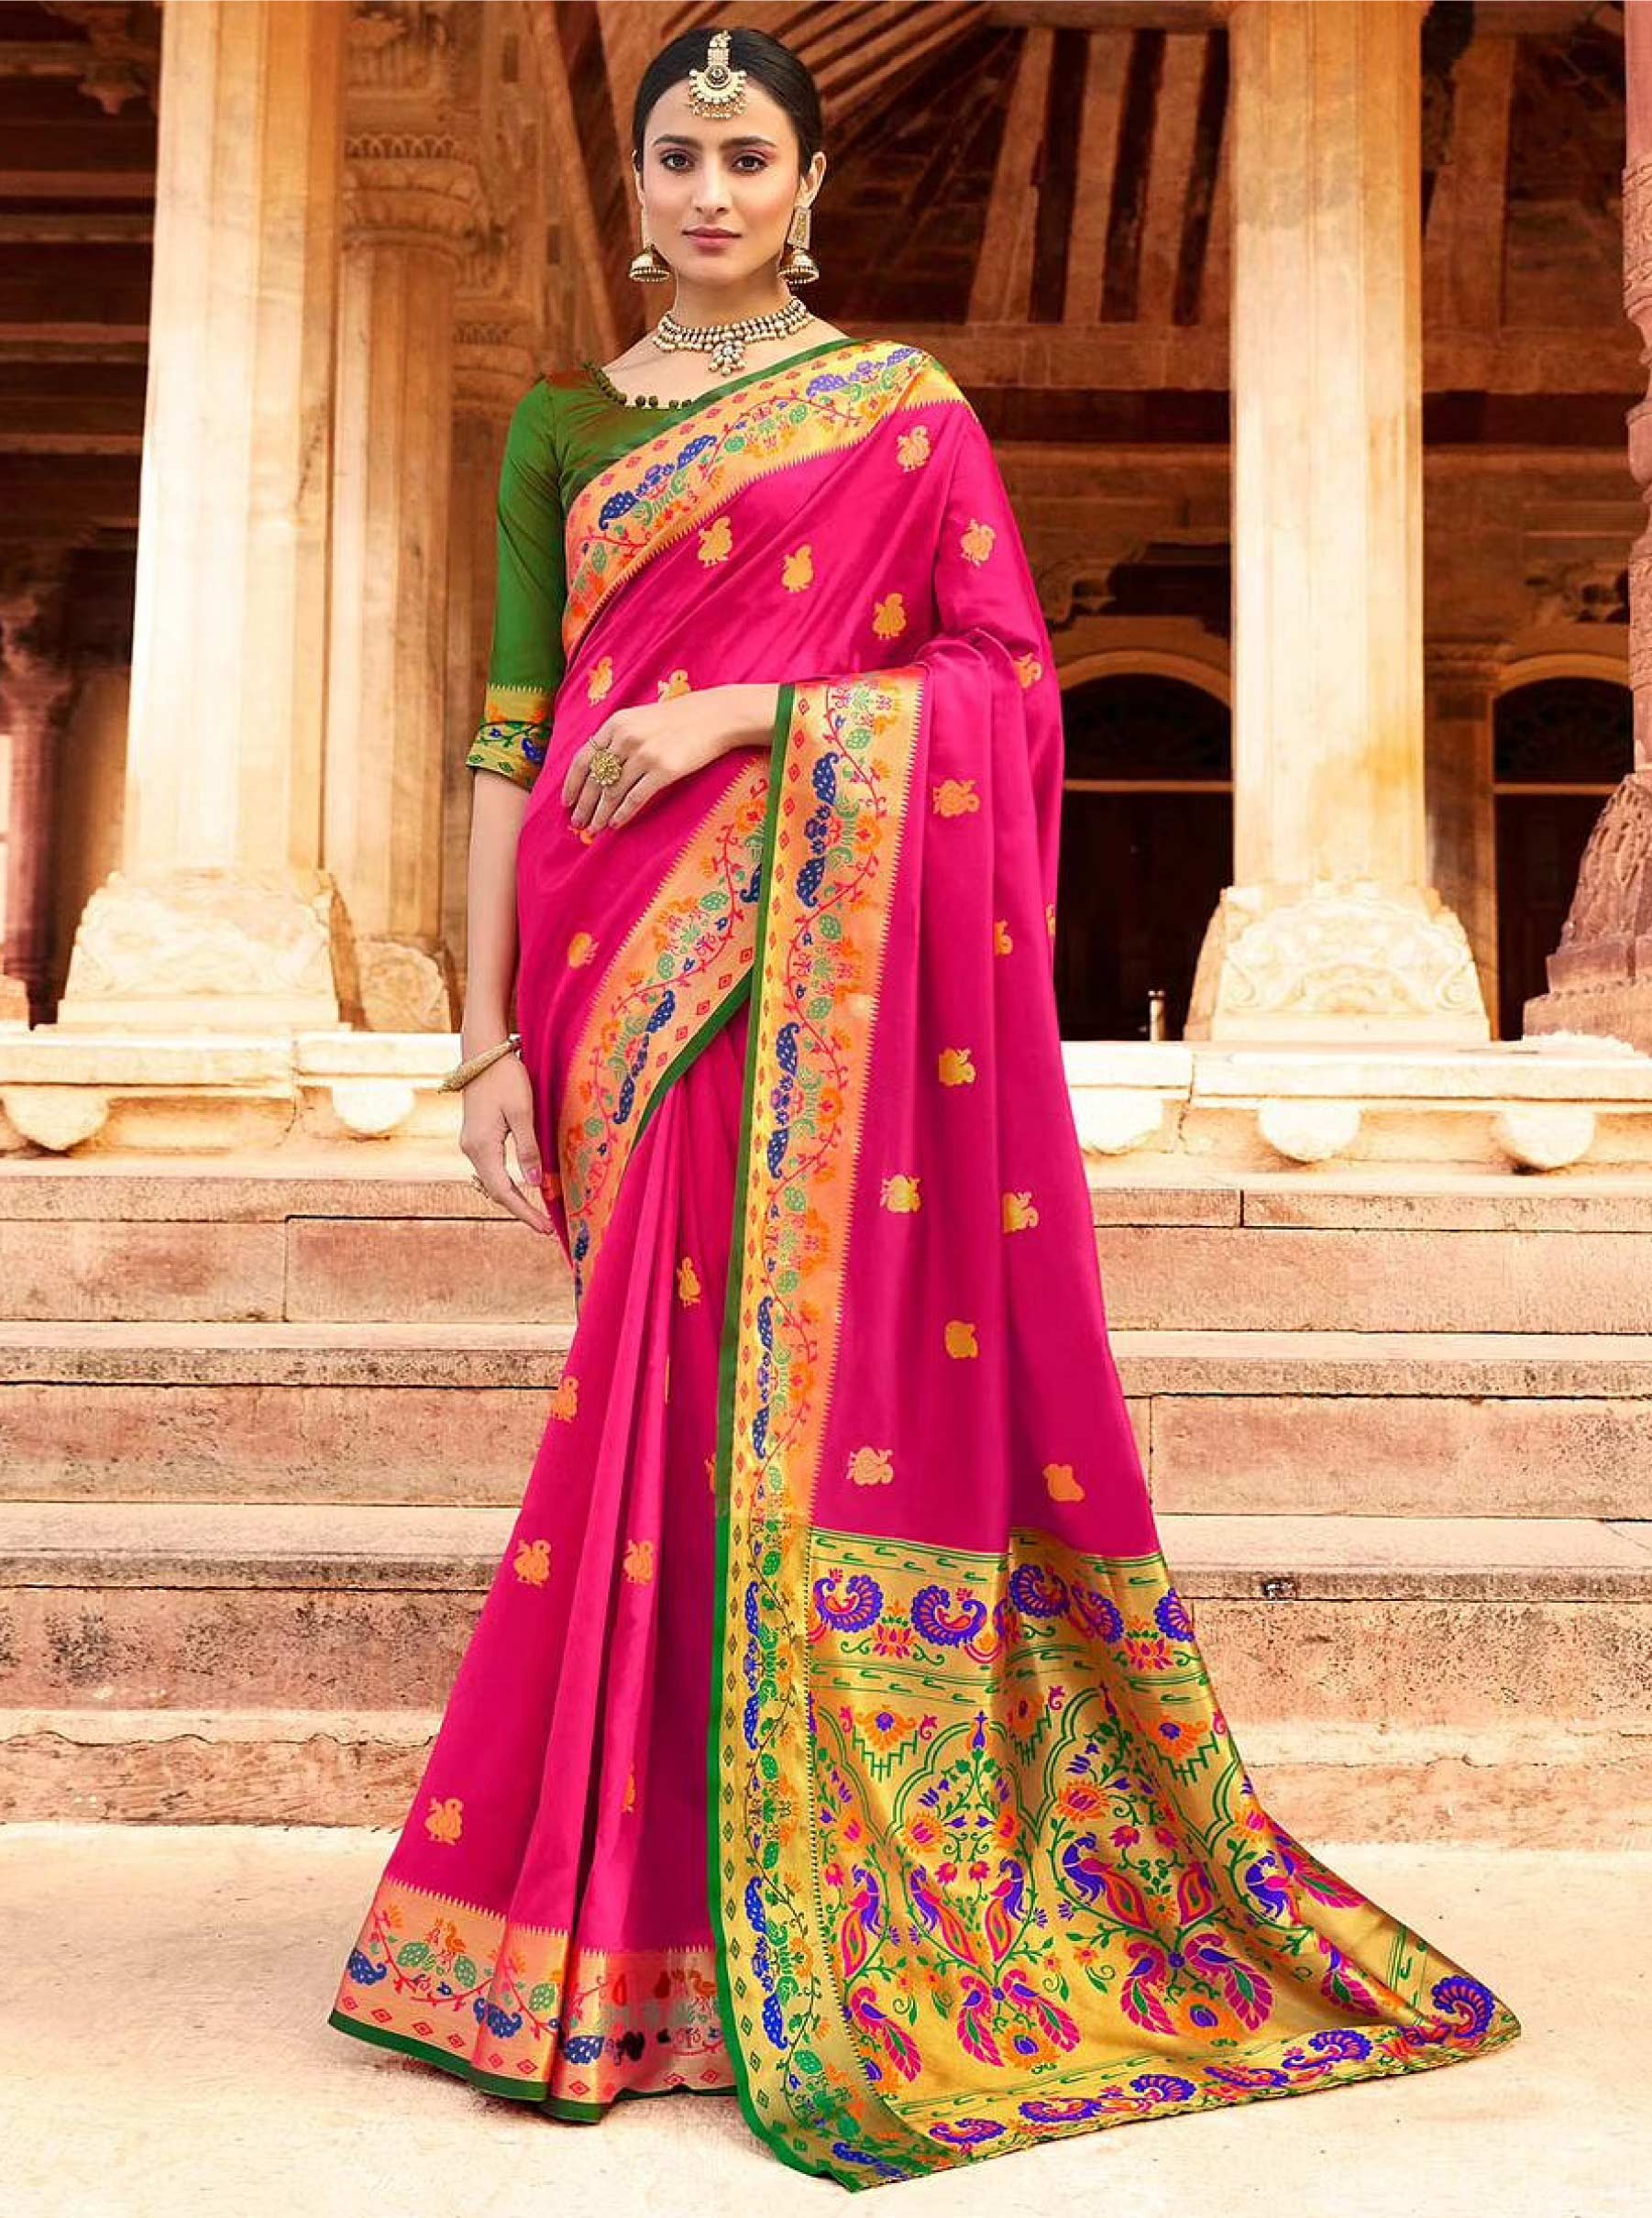 Sari truyền thống đại diện cho nền văn hóa Ấn Độ